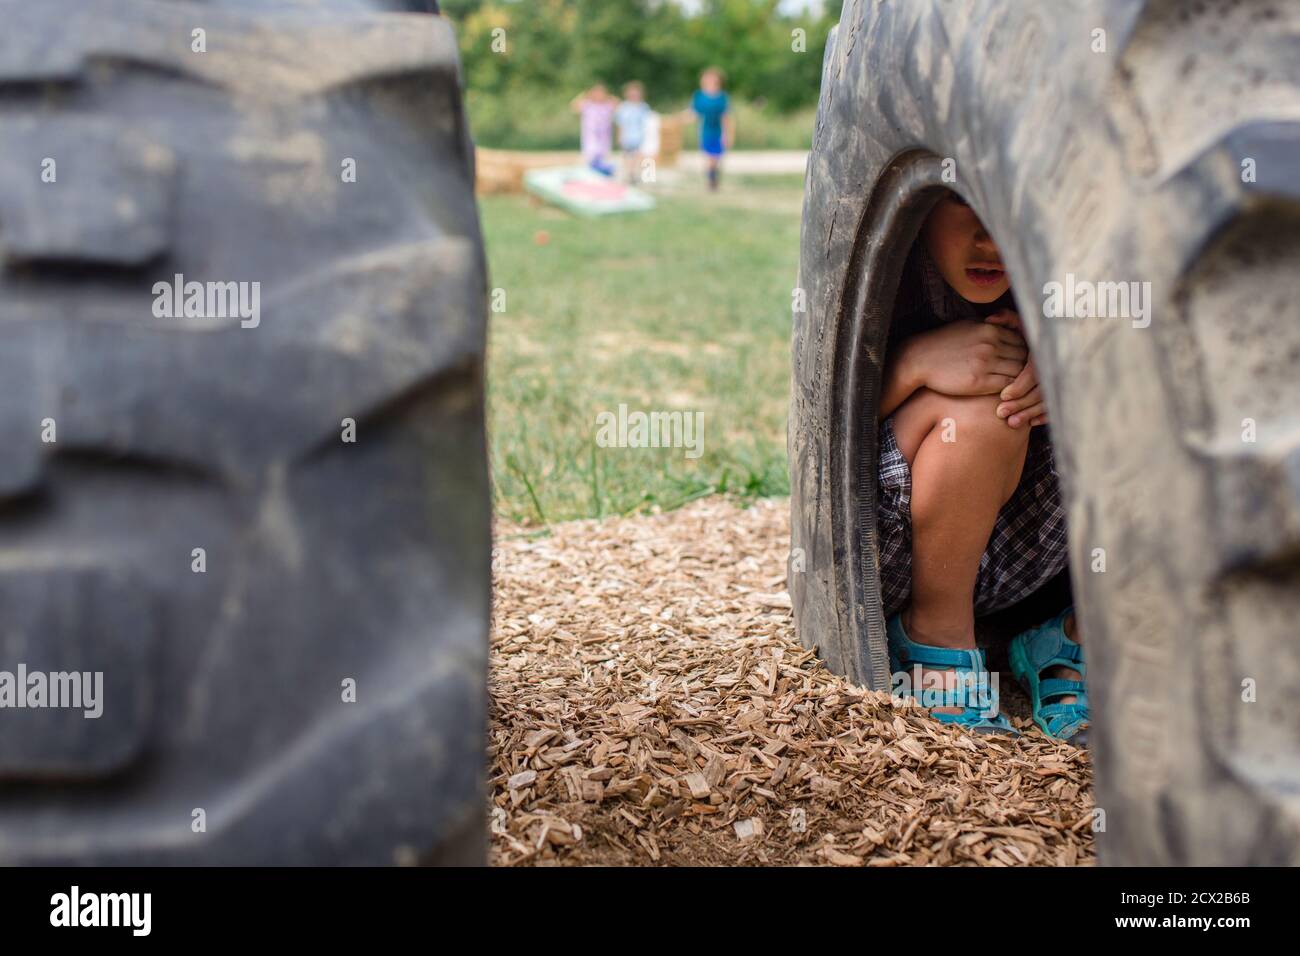 Un garçon rentre dans un pneu sur un terrain de jeu dans le jeu de cache-cache Banque D'Images